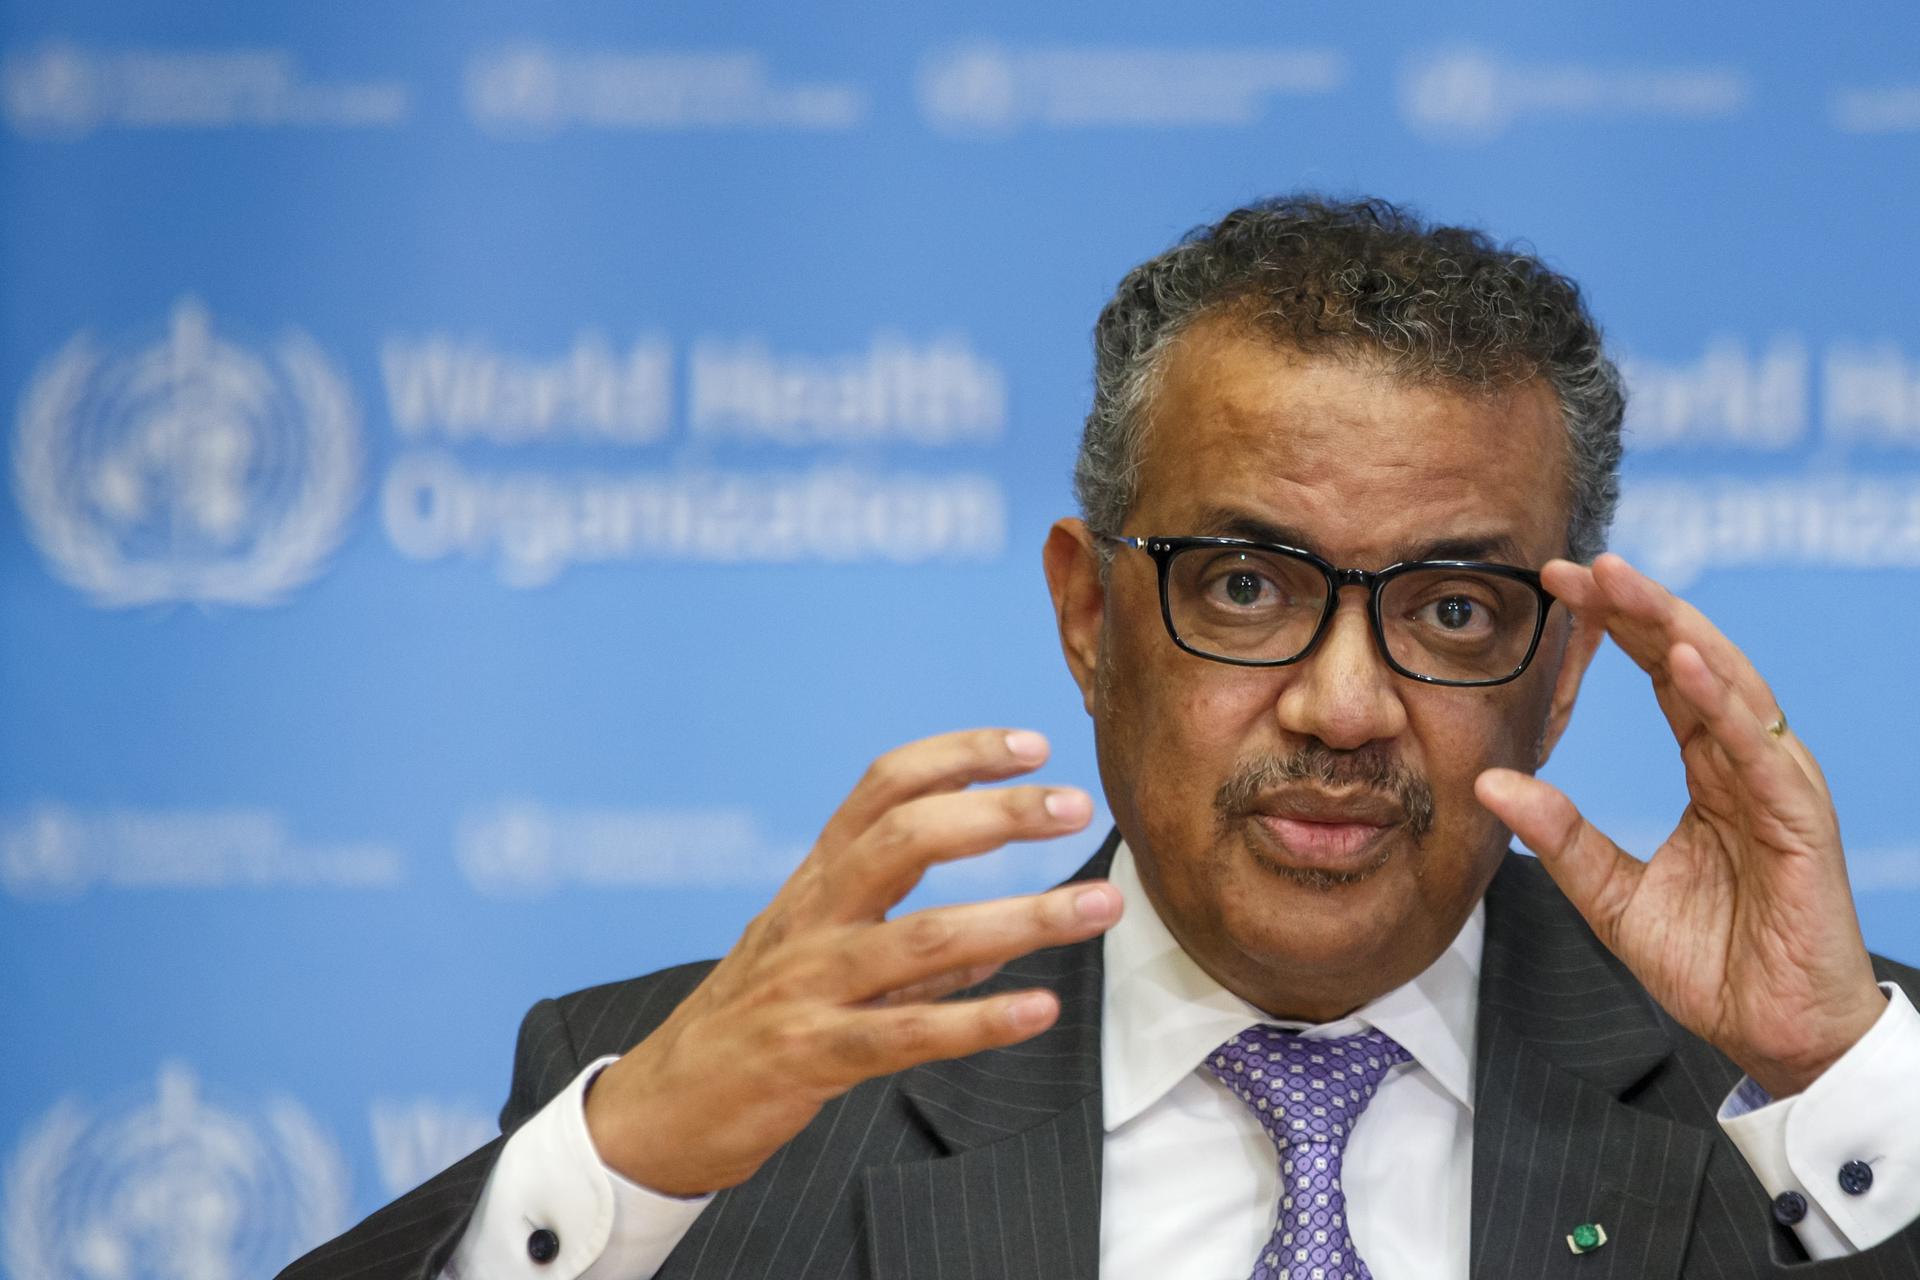 El director general de la Organización Mundial de la Salud (OMS), Tedros Adhanom Ghebreyesus, en una fotografía de archivo. EFE/ Salvatore Di Nolfi